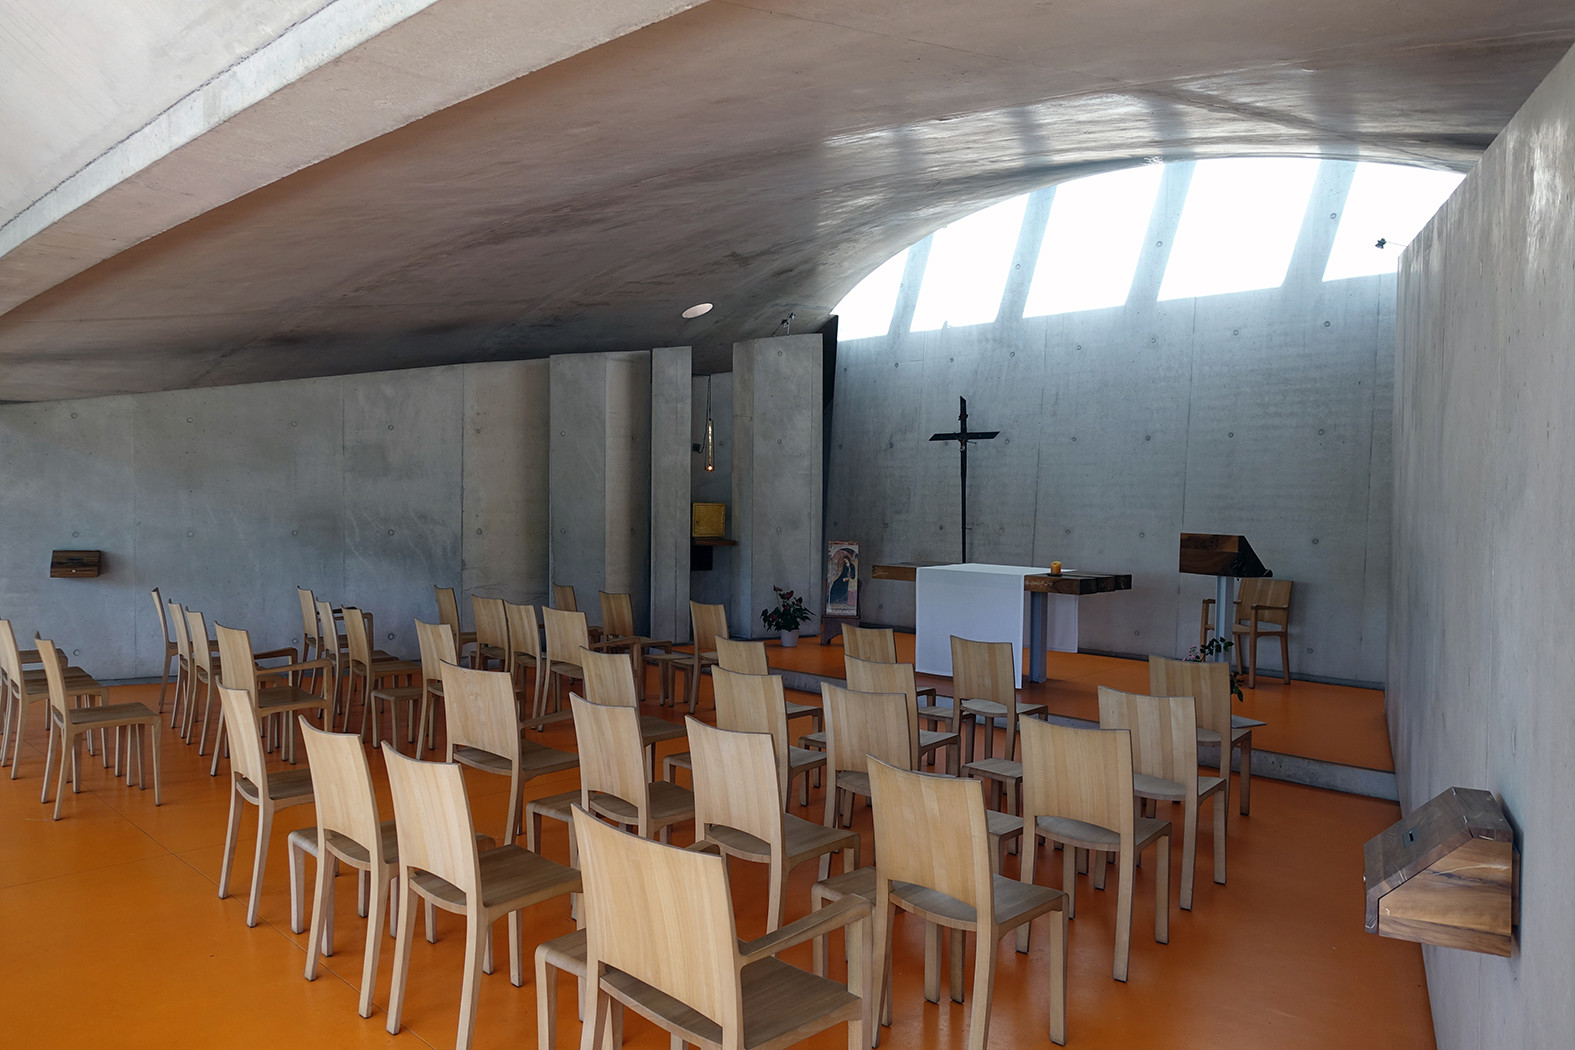 Oratorium von Renzo Piano in Ronchamp